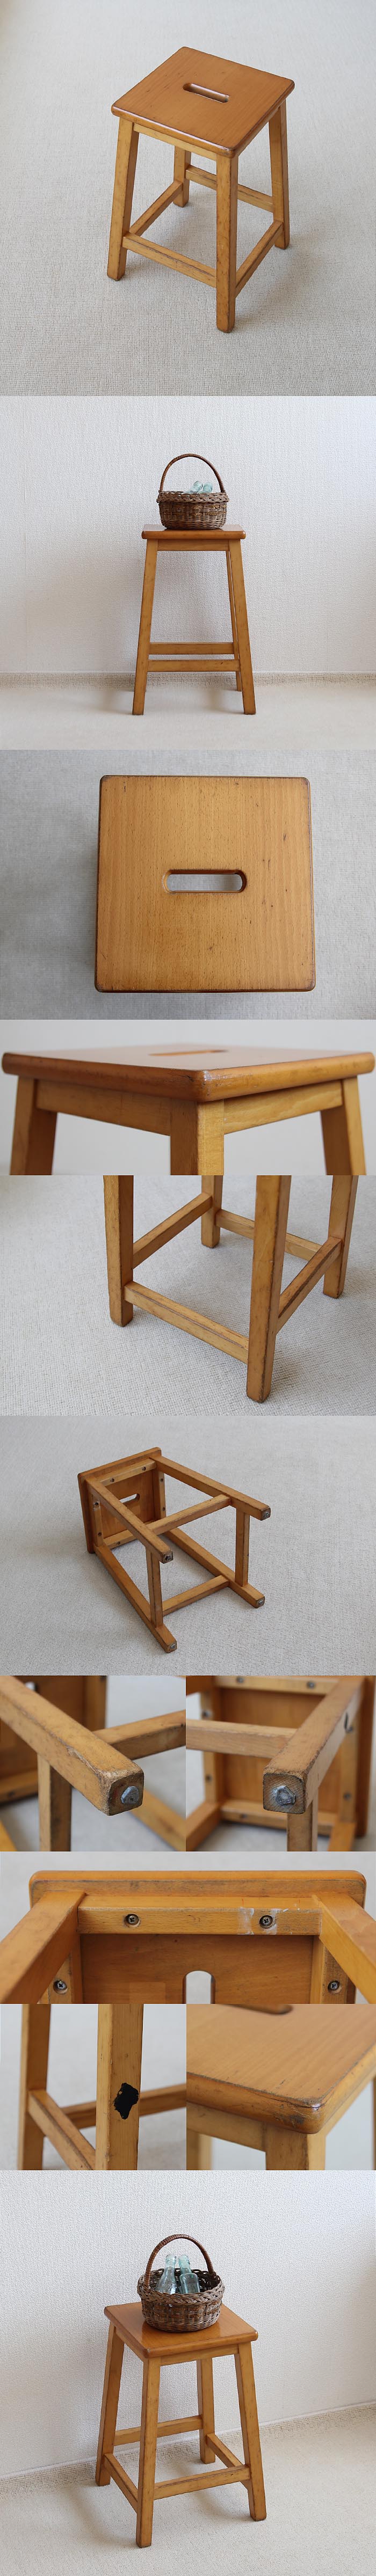 スコットランド ヴィンテージスタイル スクール スツール 木製 イギリス 学校椅子 家具「eme furniture」P-395